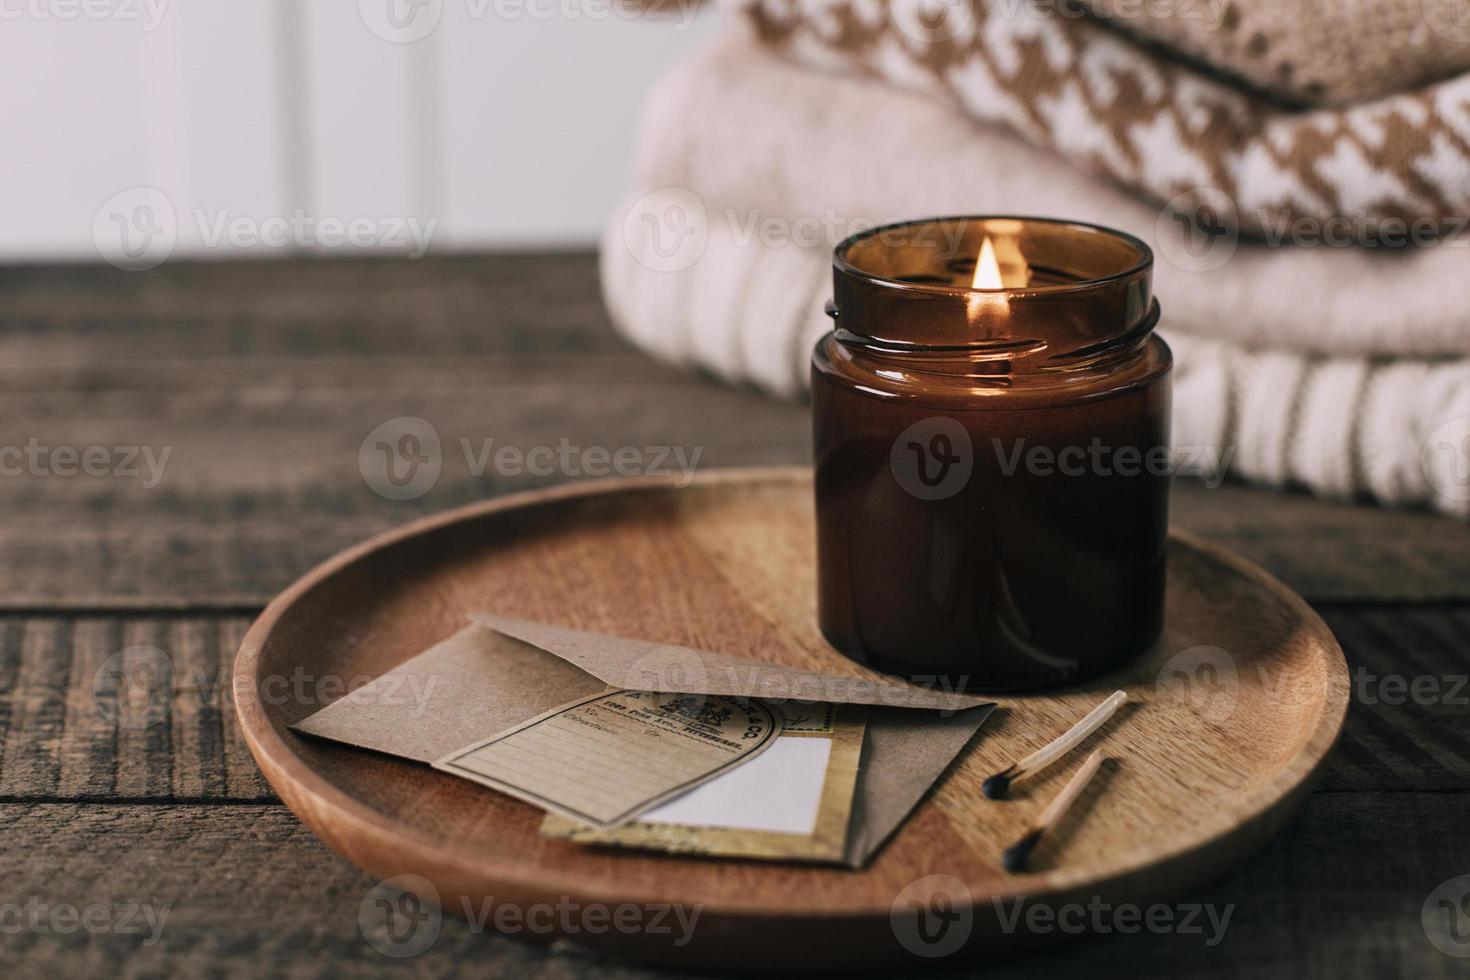 brandend kaars in klein amber glas pot met houten lont, stack gebreid seizoen truien. knus levensstijl, hygge concept foto